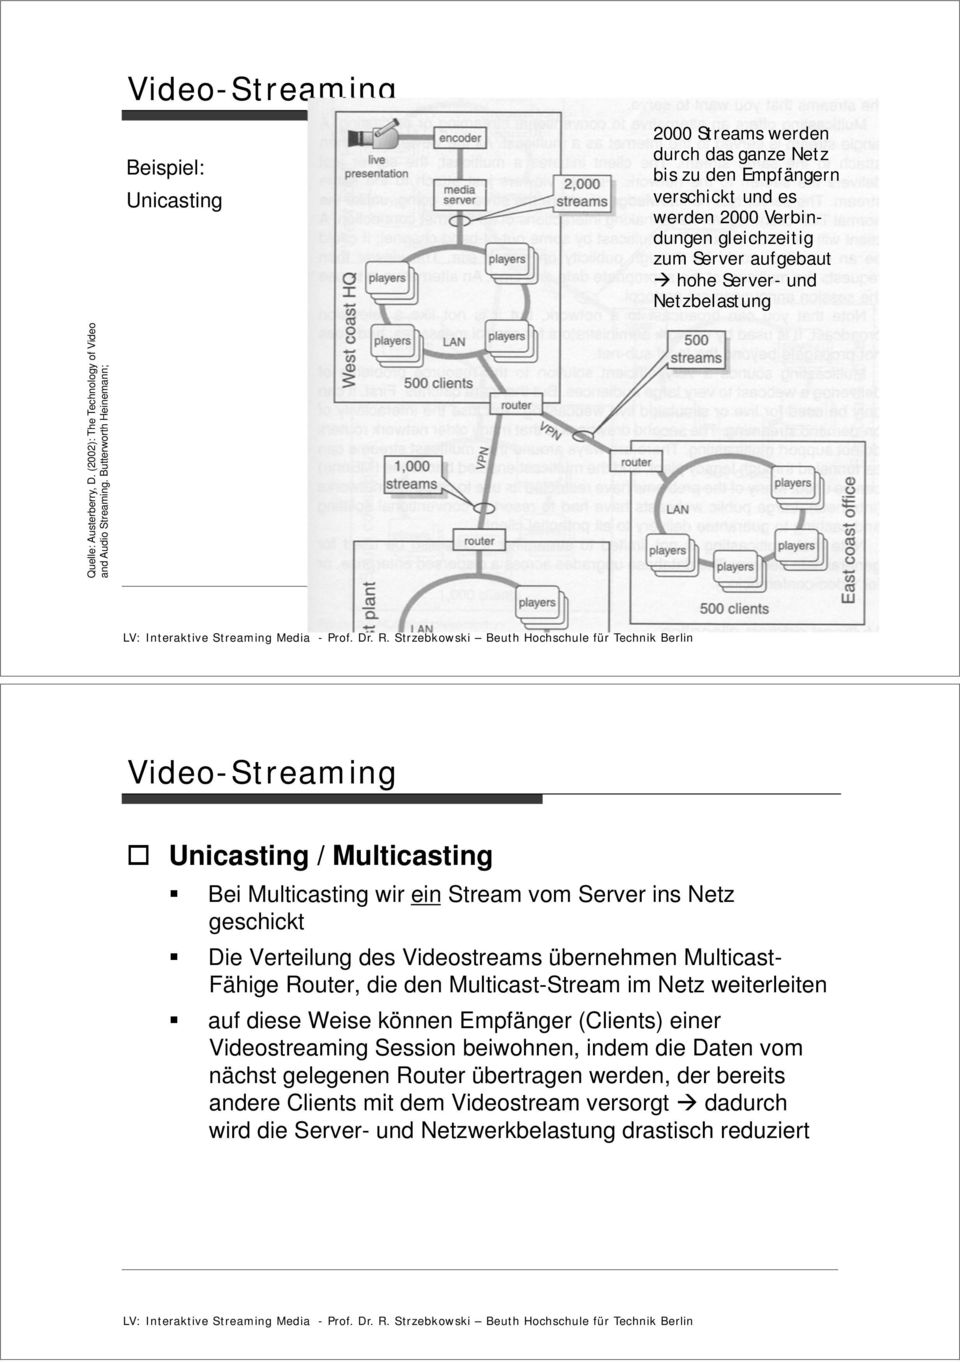 Multicast- Fähige Router, die den Multicast-Stream im Netz weiterleiten auf diese Weise können Empfänger (Clients) einer Videostreaming Session beiwohnen, indem die